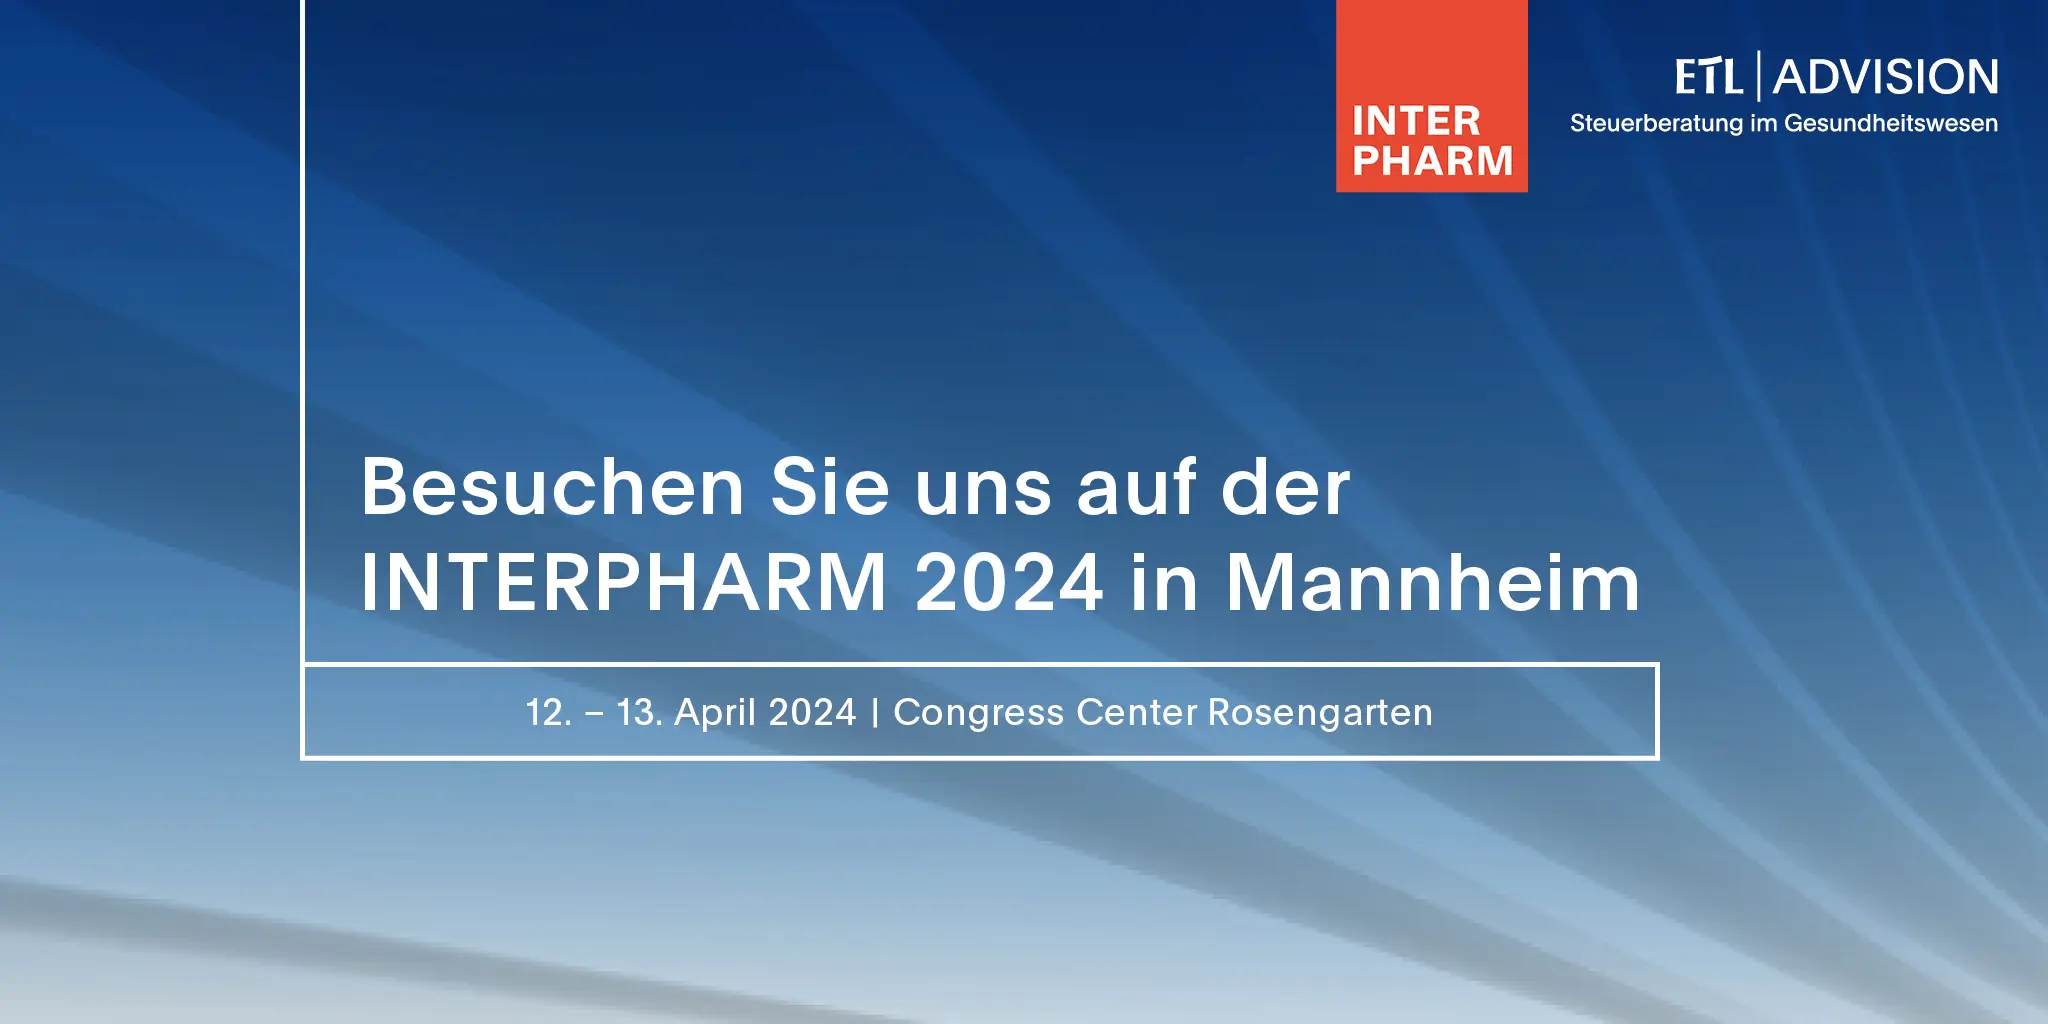 Treffen Sie unsere Apotheken-Experten auf der INTERPHARM in Mannheim